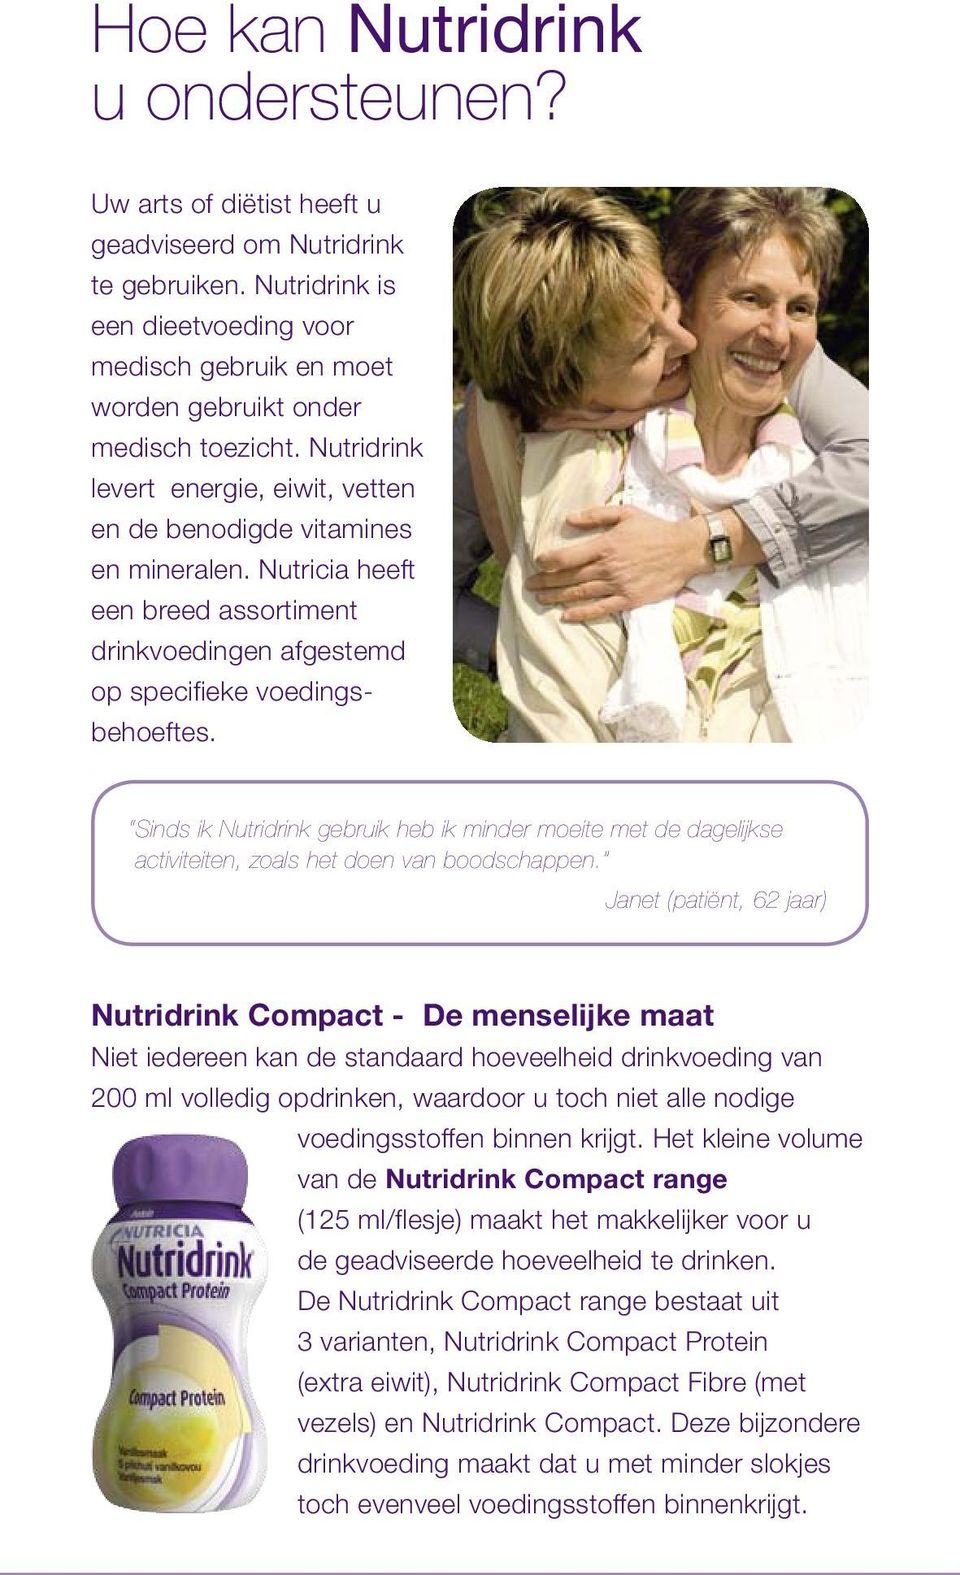 Nutricia heeft een breed assortiment drinkvoedingen afgestemd op specifieke voedingsbehoeftes.